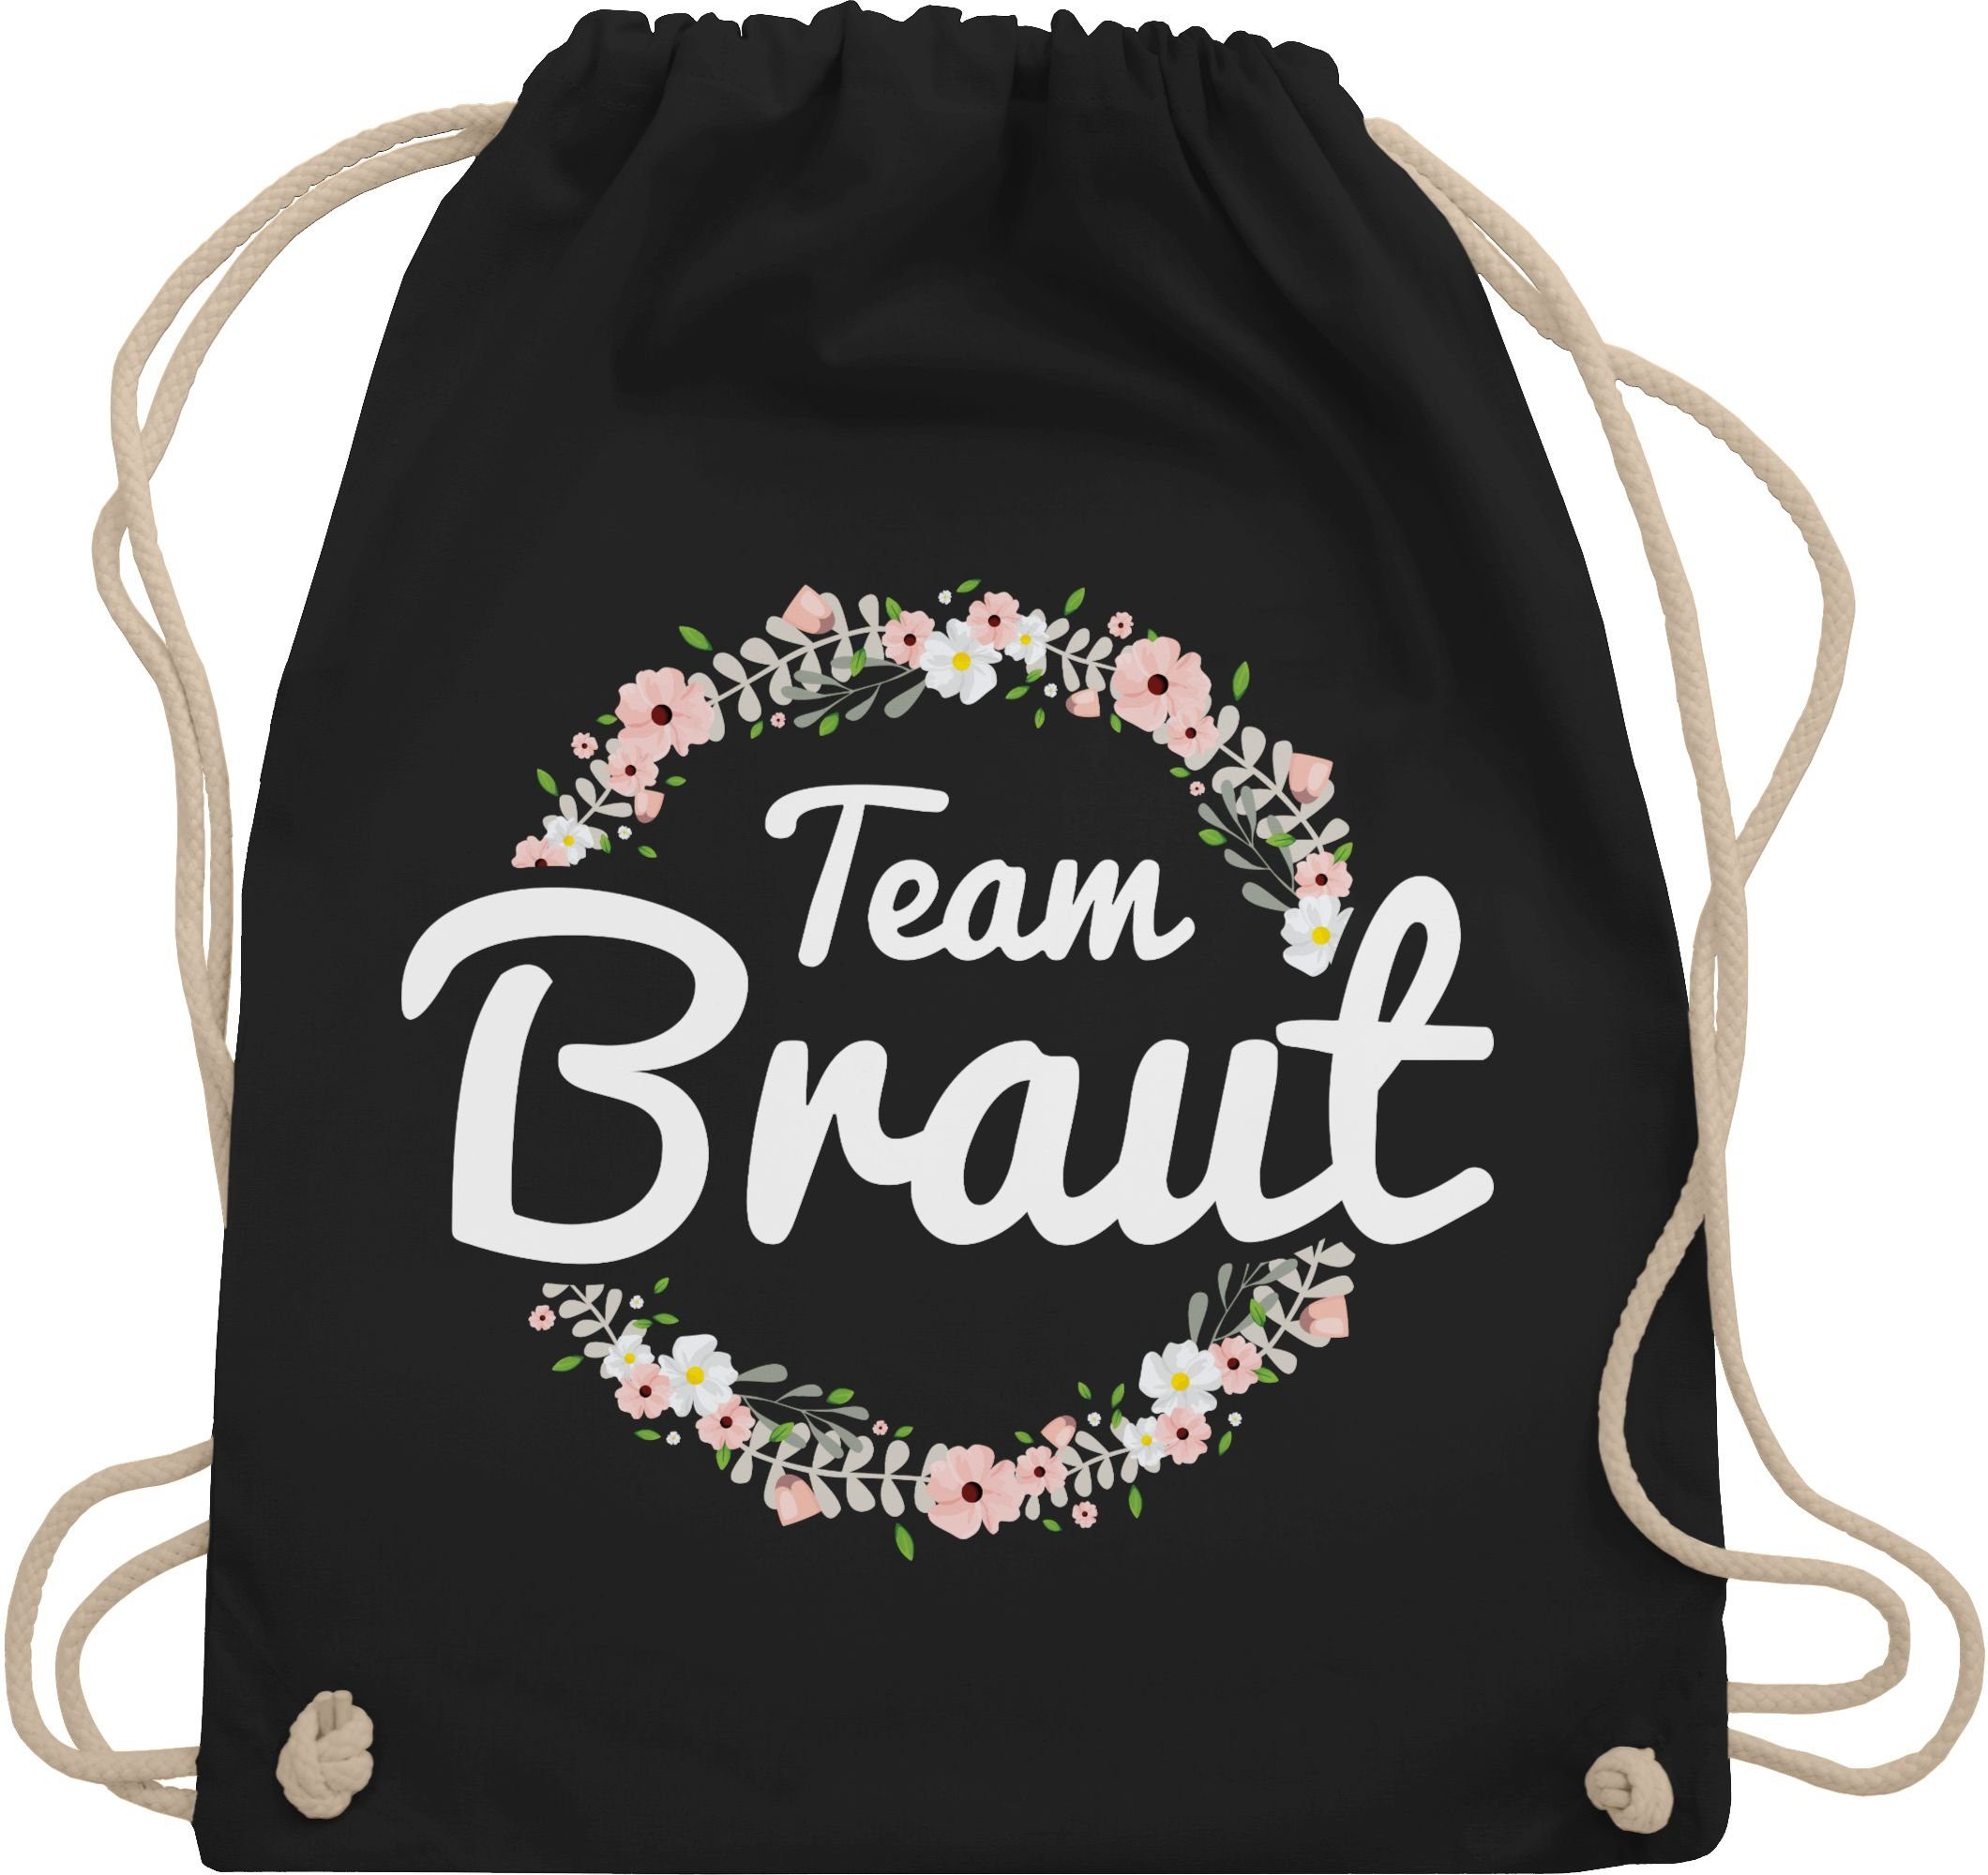 Braut Bride - Crew, Schwarz JGA Frauen Junggesellenabschied Shirtracer Team Turnbeutel 03 Blumenkranz